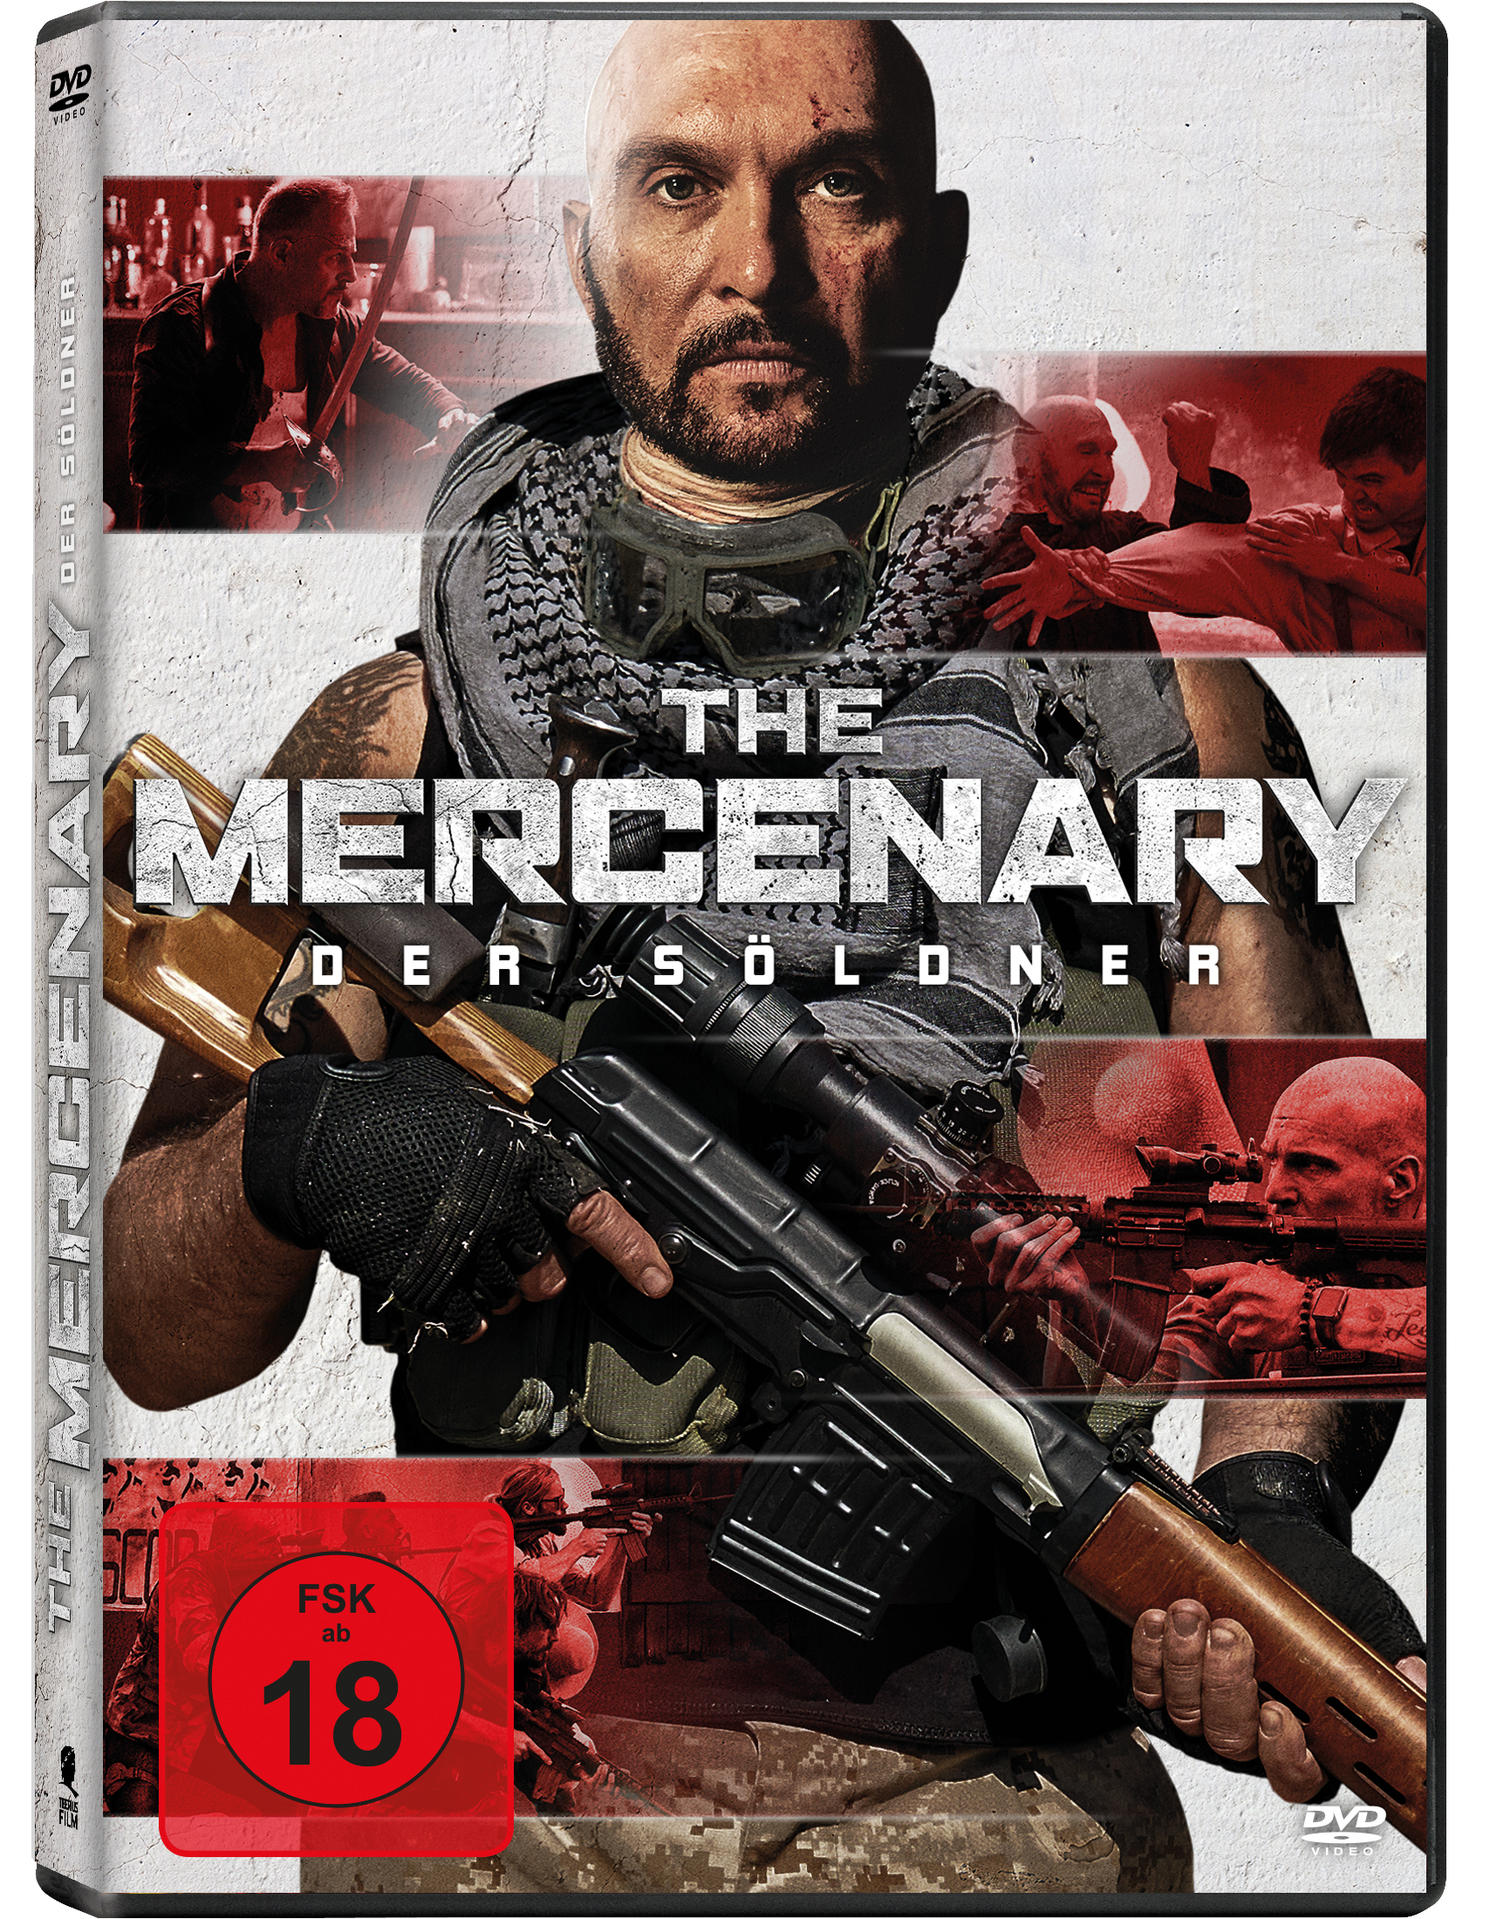 Söldner The Der DVD – Mercenary